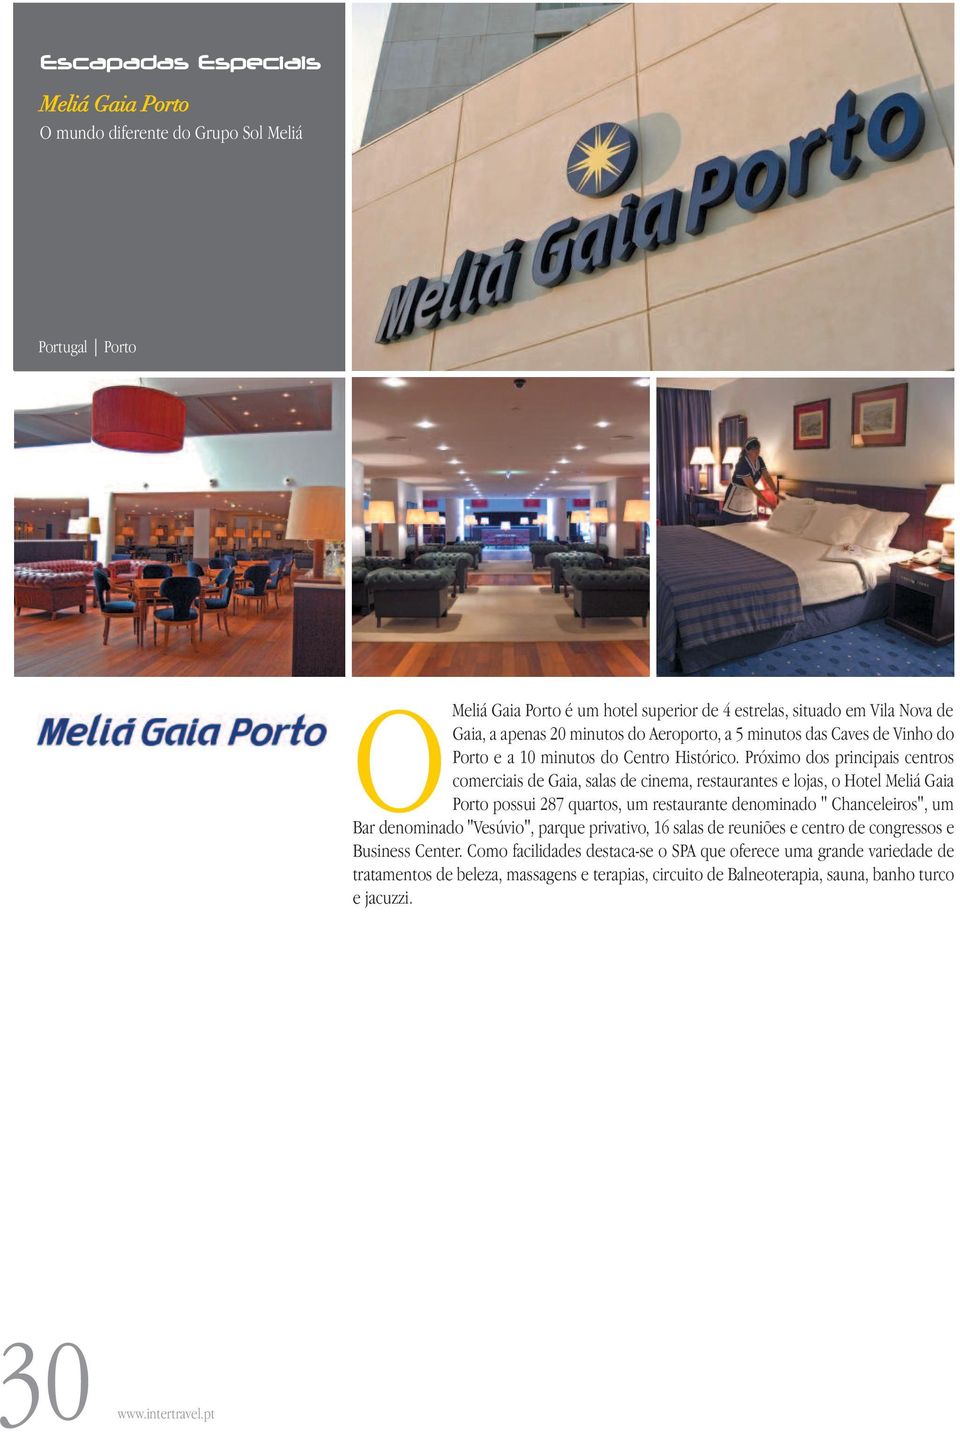 Próximo dos principais centros comerciais de Gaia, salas de cinema, restaurantes e lojas, o Hotel Meliá Gaia Porto possui 287 quartos, um restaurante denominado "